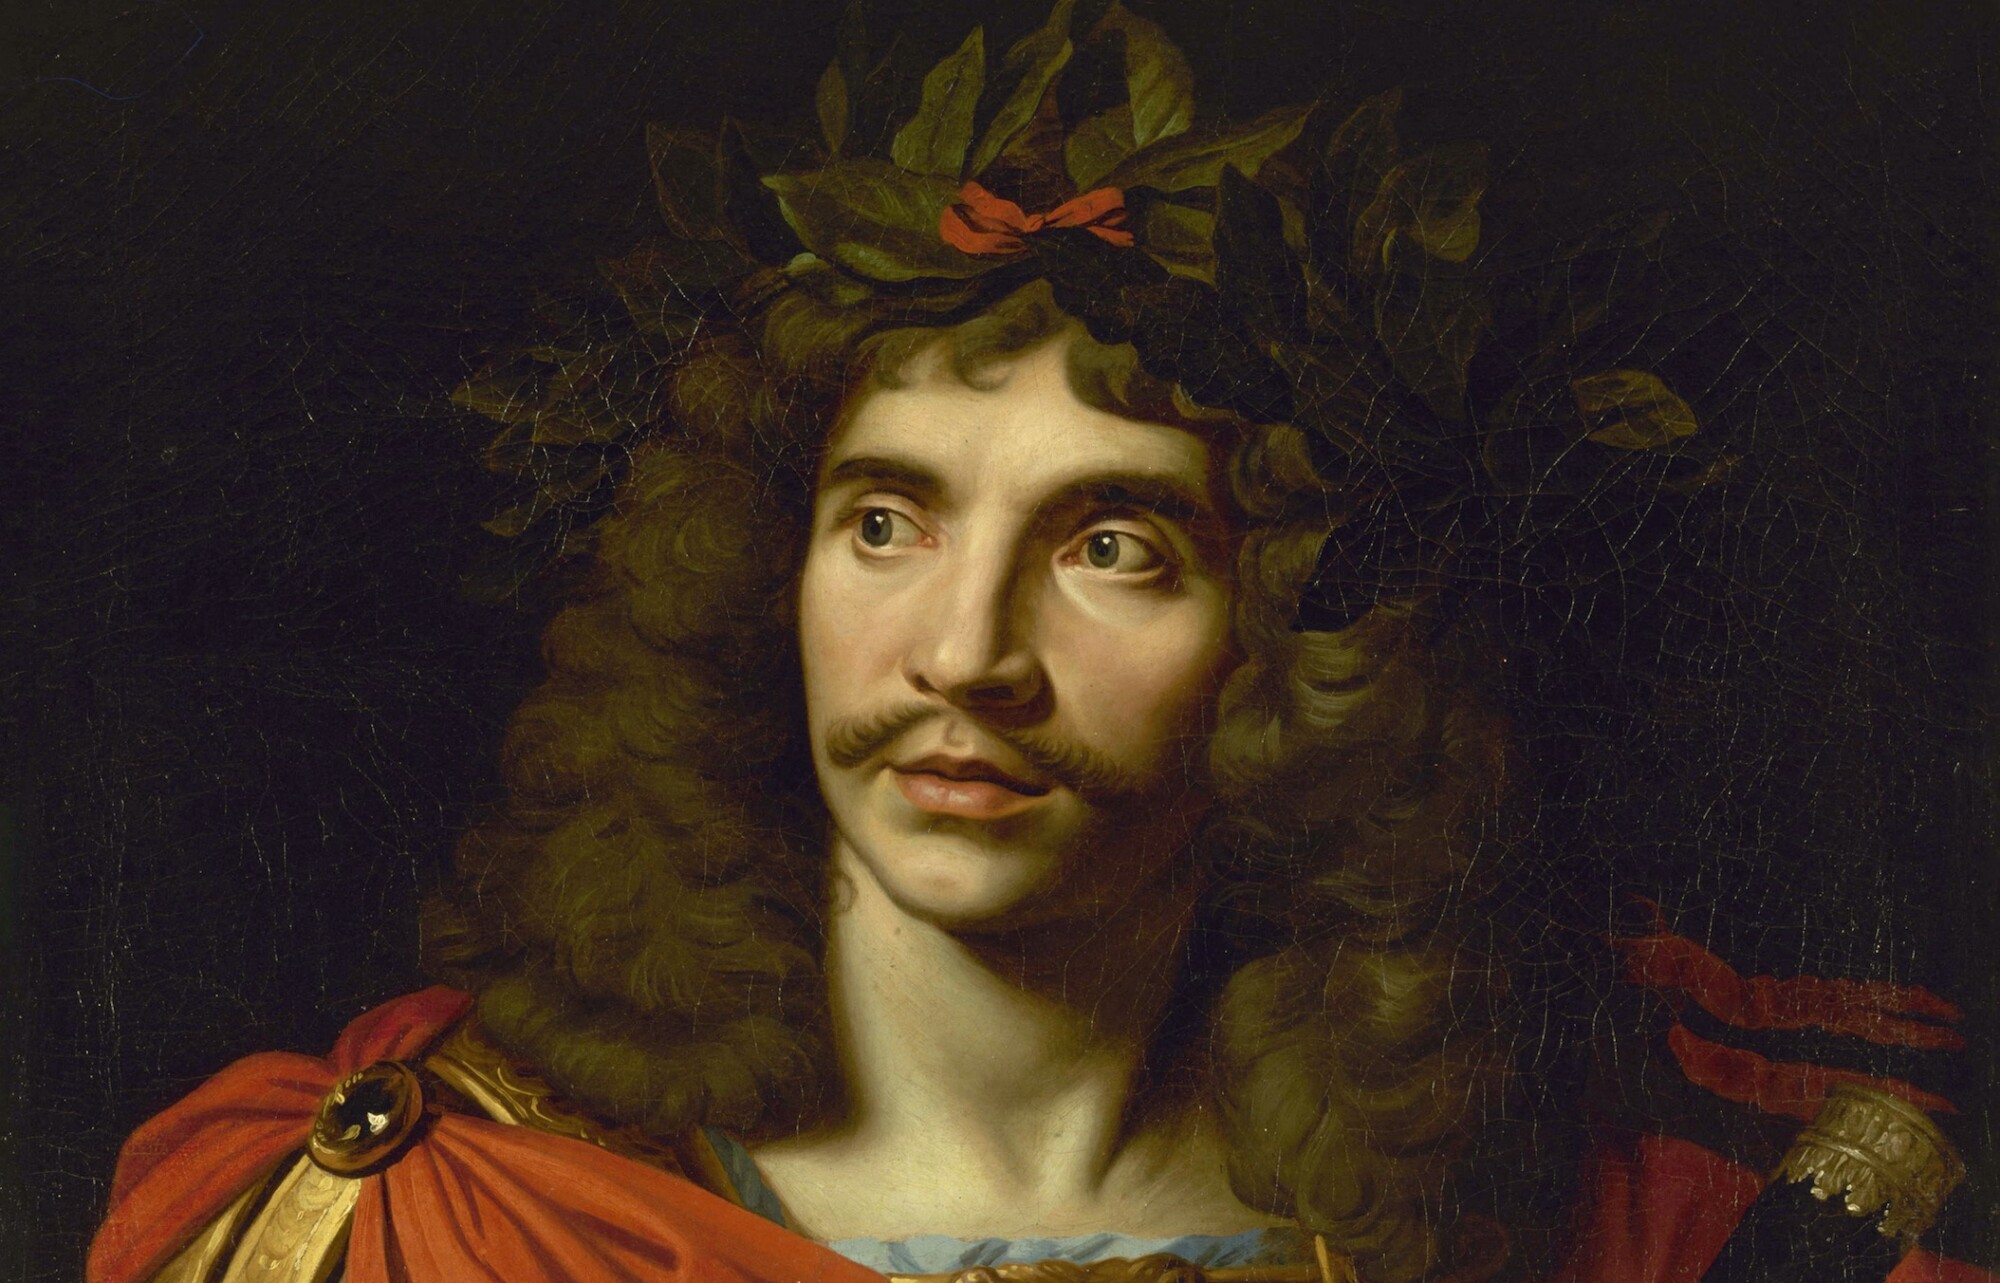 [Édito] 400 ans après Molière, avons-nous changé ?